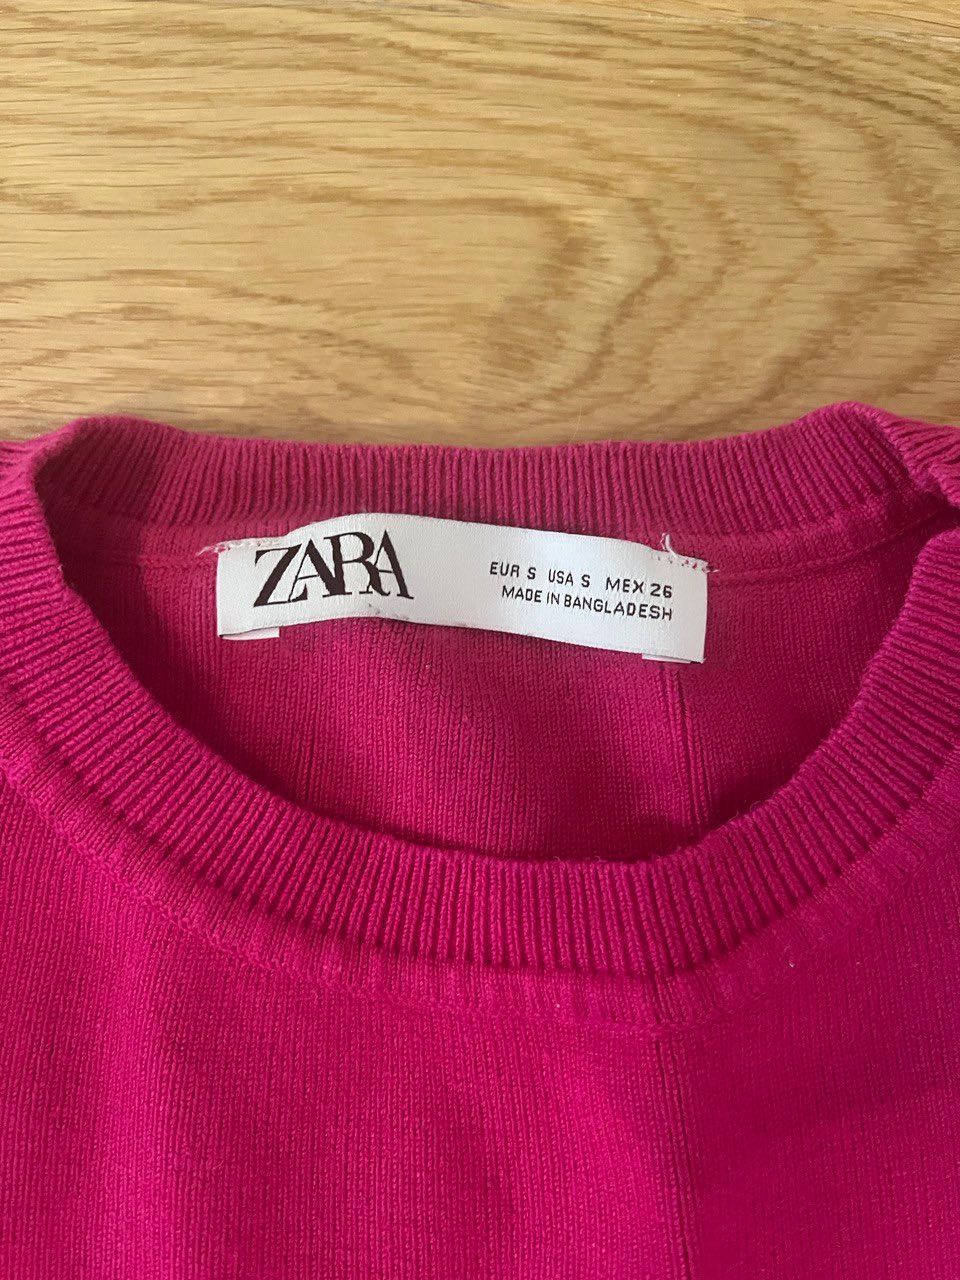 Intensywnie różową koszulkę-tank top Zara S